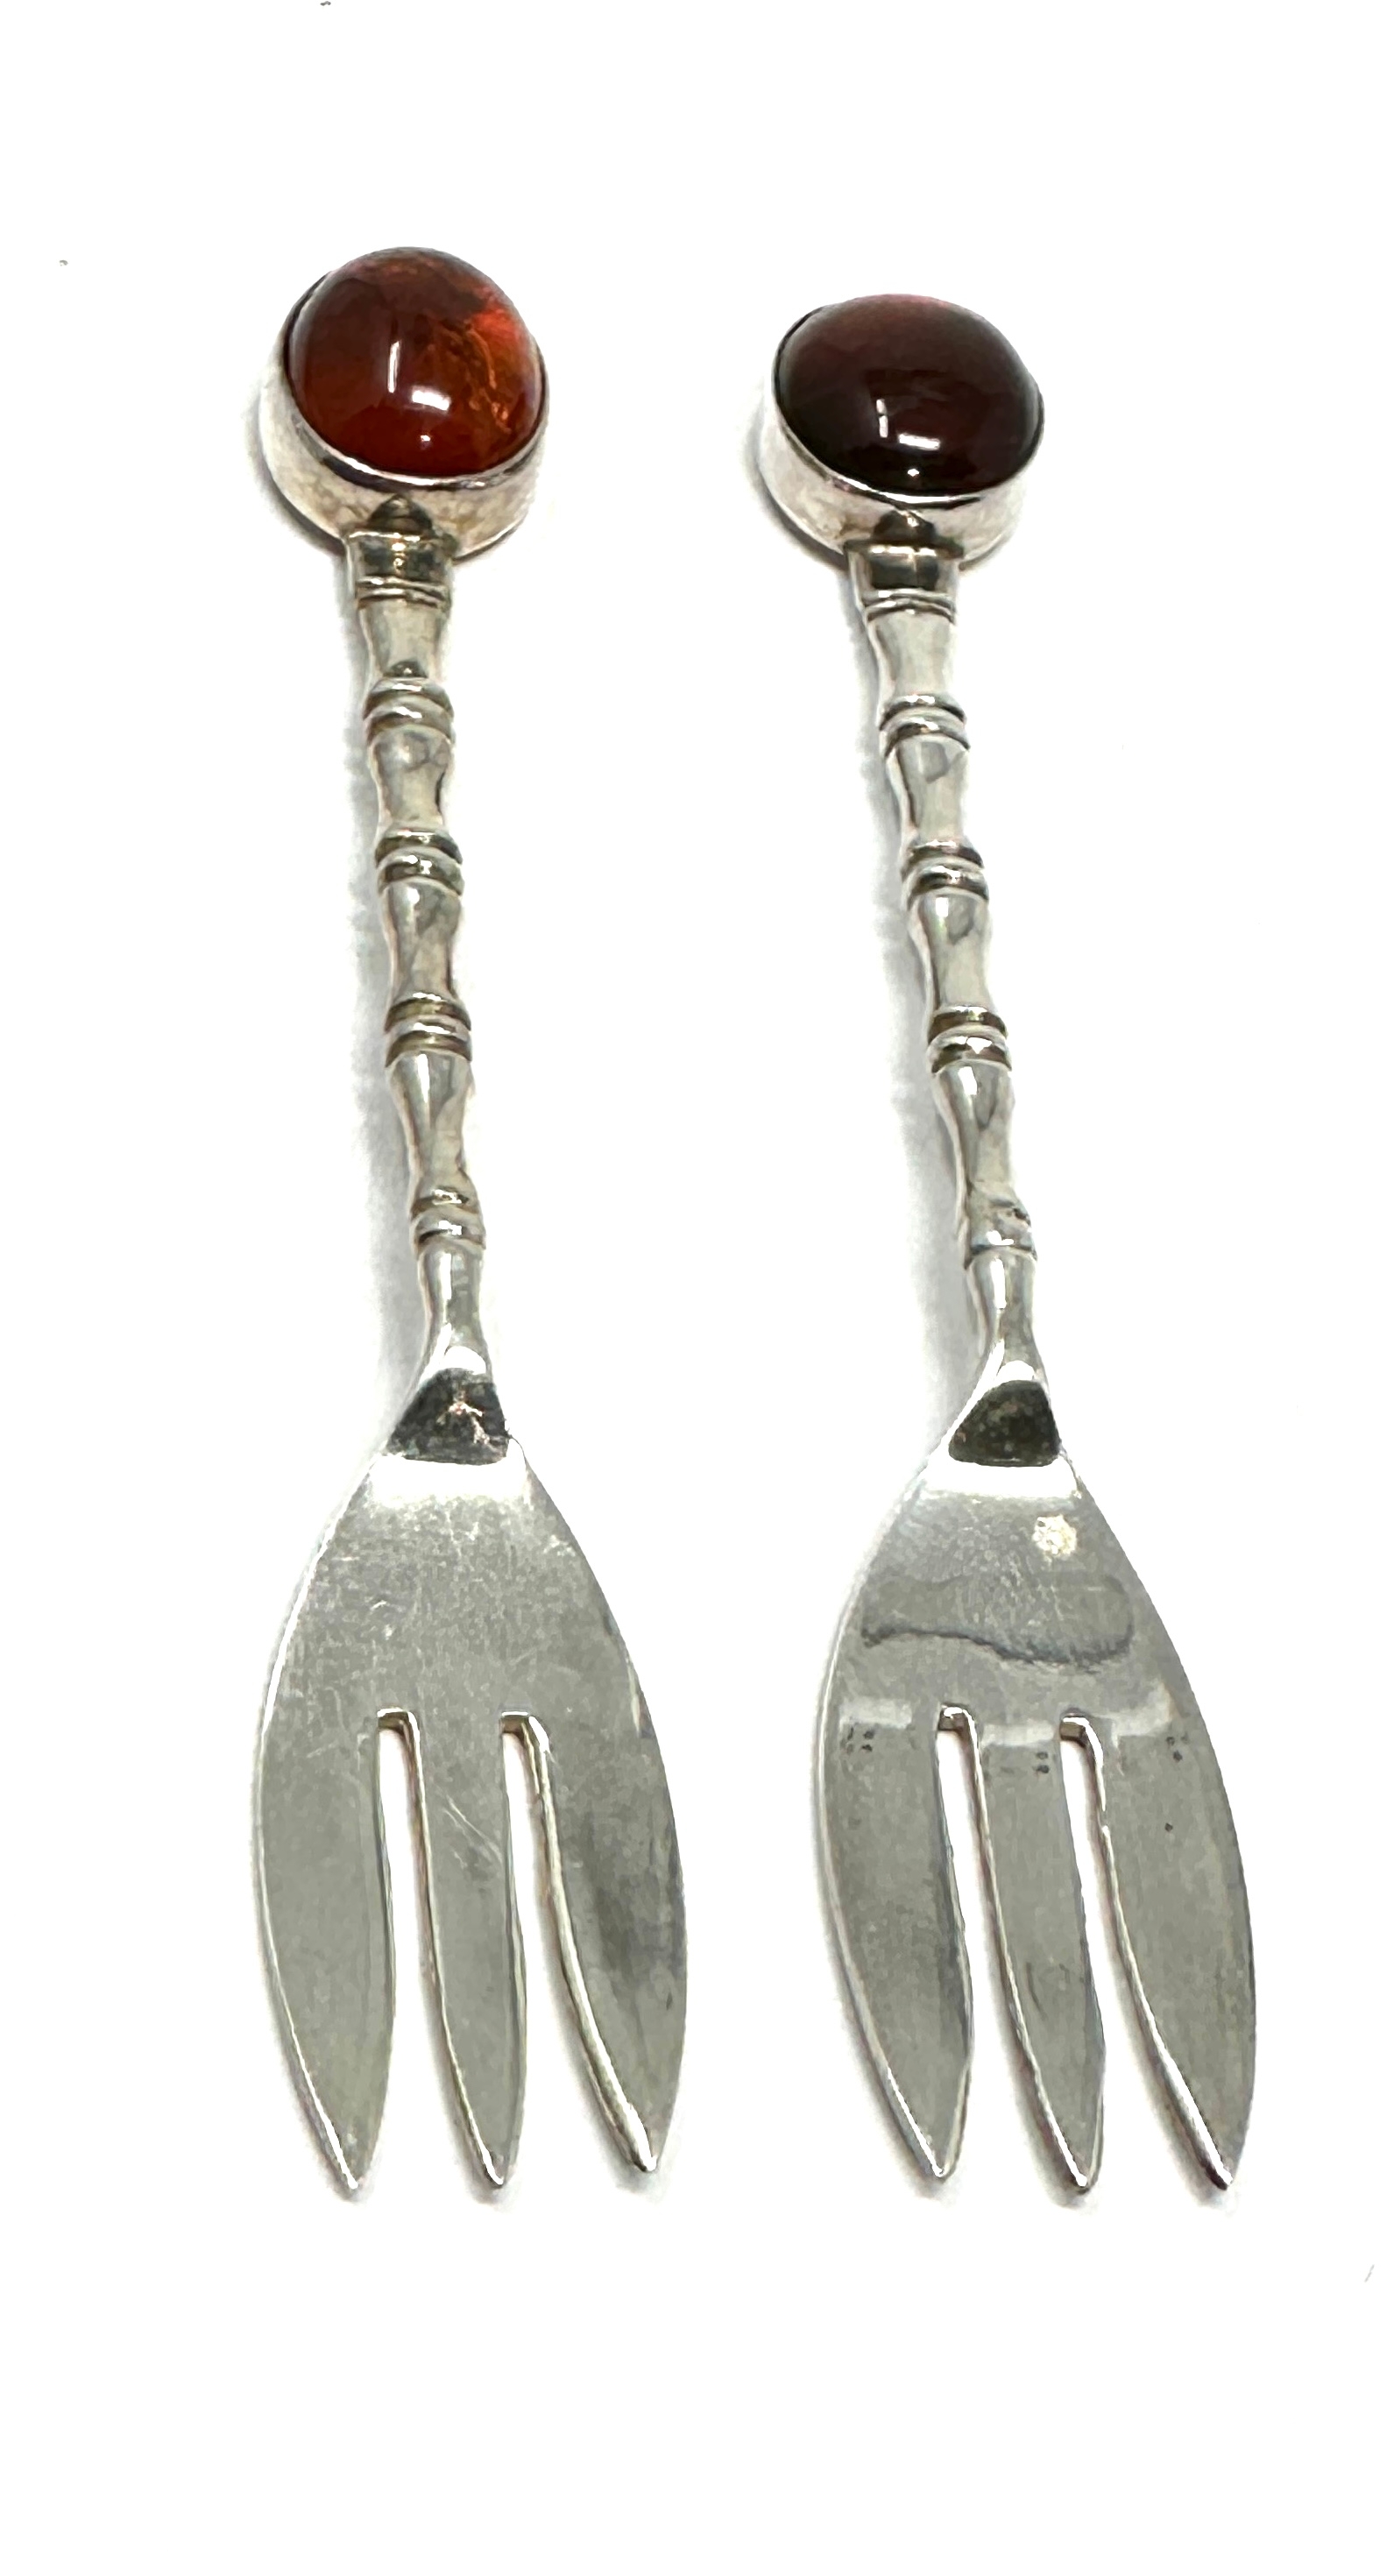 2 silver & amber pickle forks